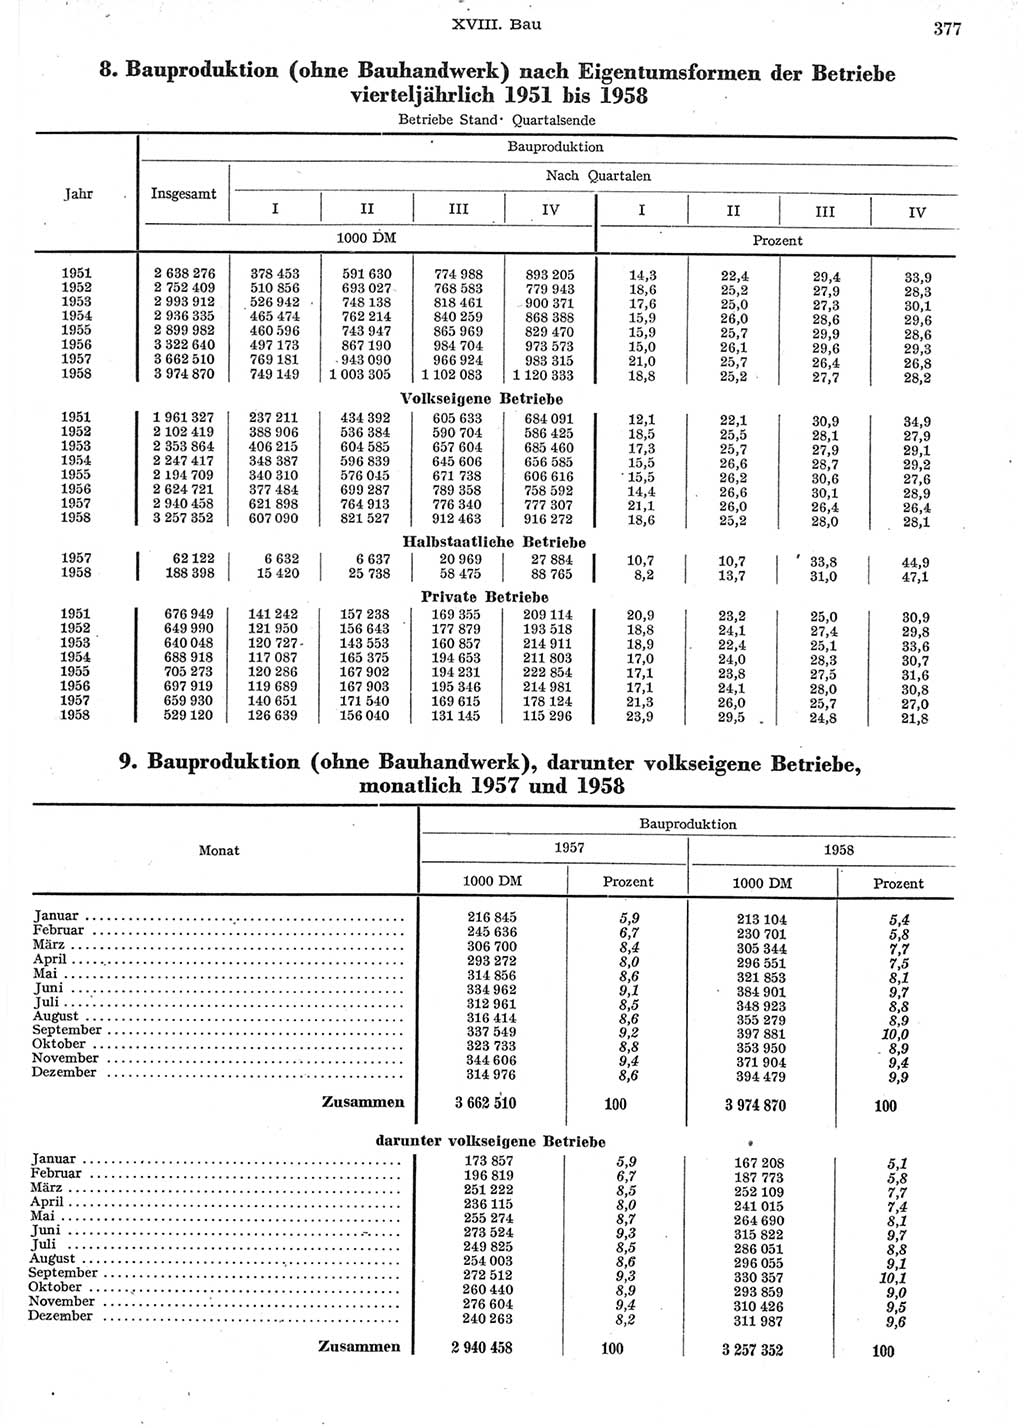 Statistisches Jahrbuch der Deutschen Demokratischen Republik (DDR) 1958, Seite 377 (Stat. Jb. DDR 1958, S. 377)